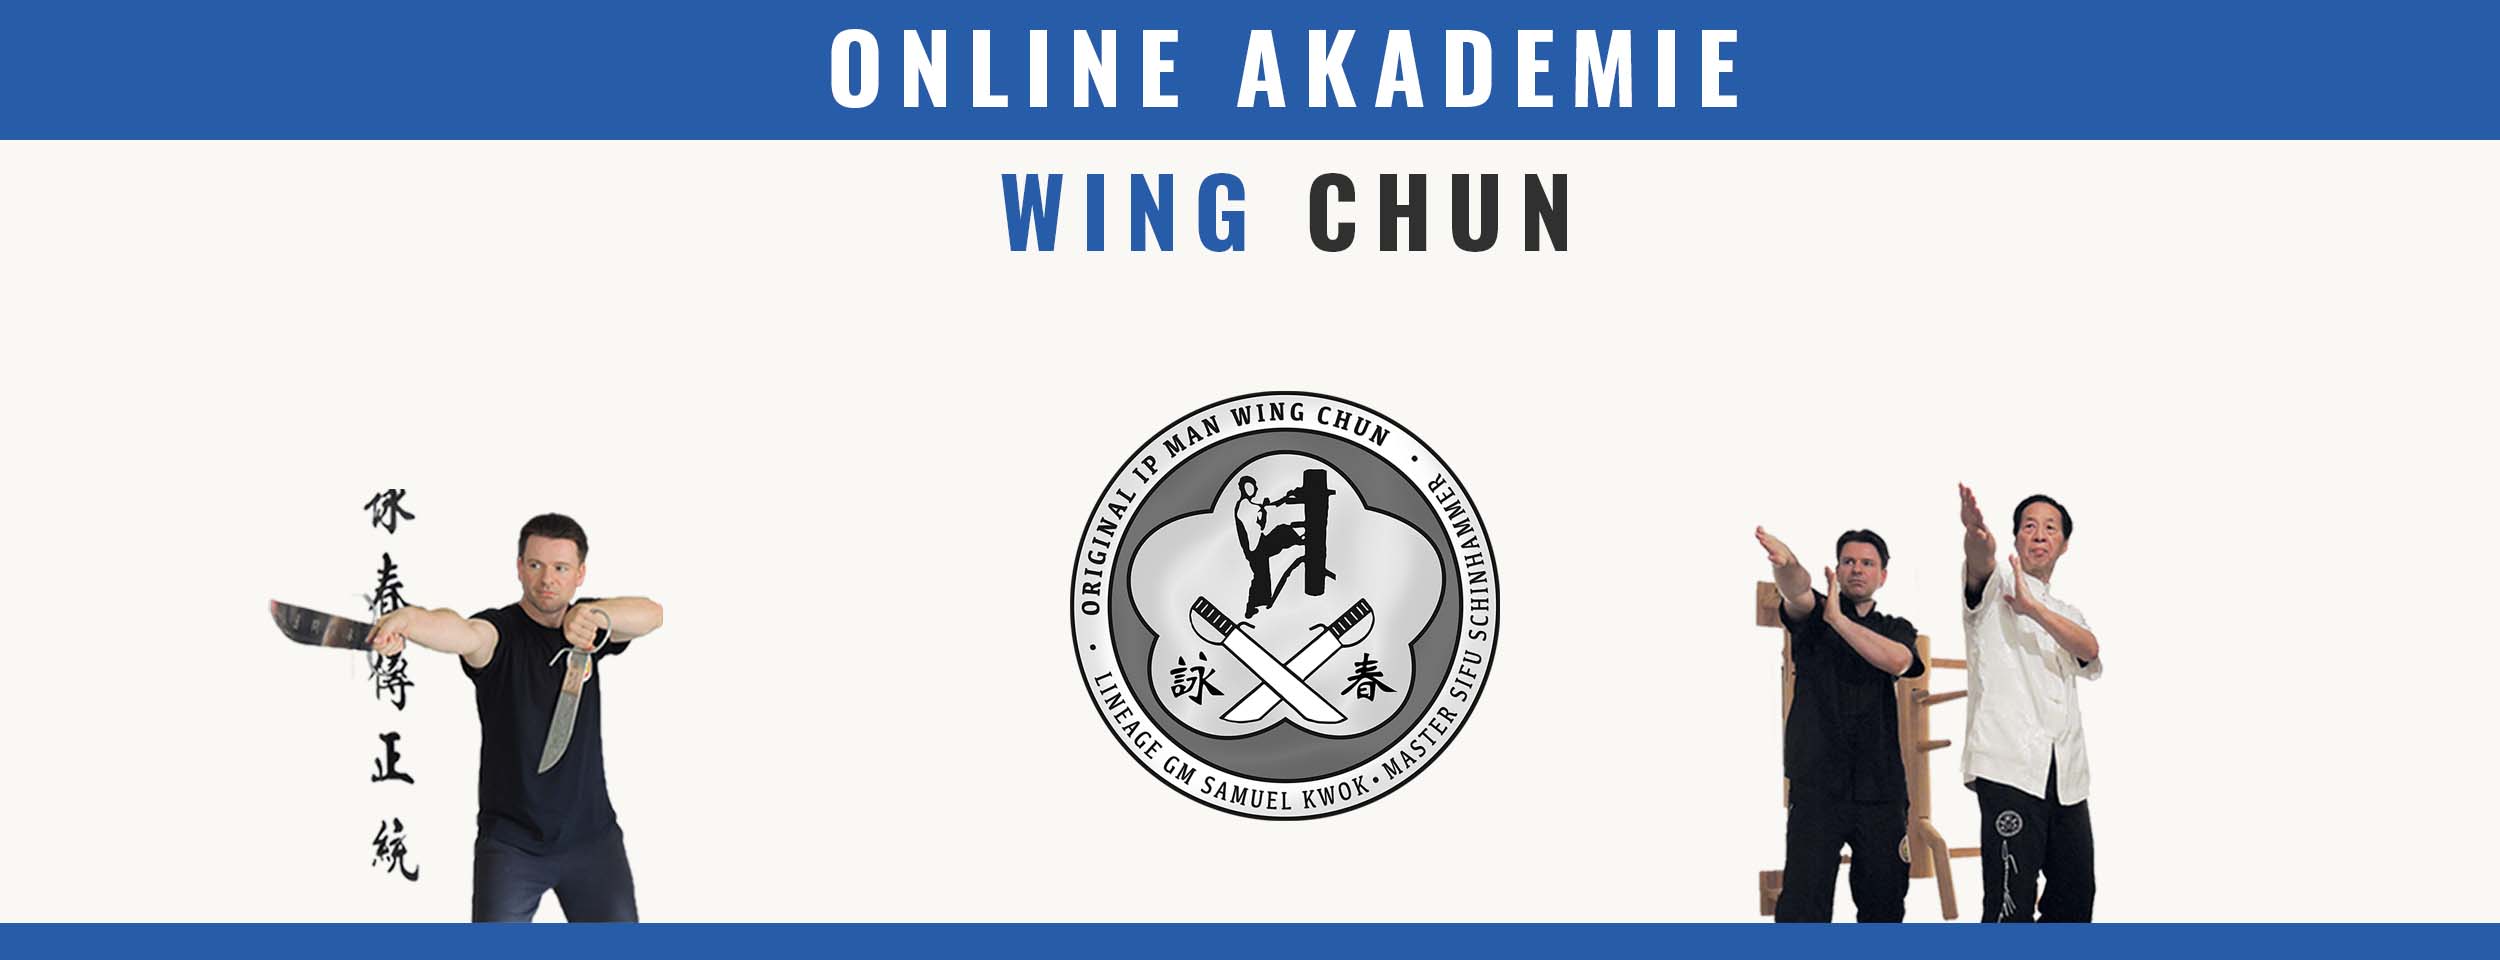 (c) Wing-chun-online.de